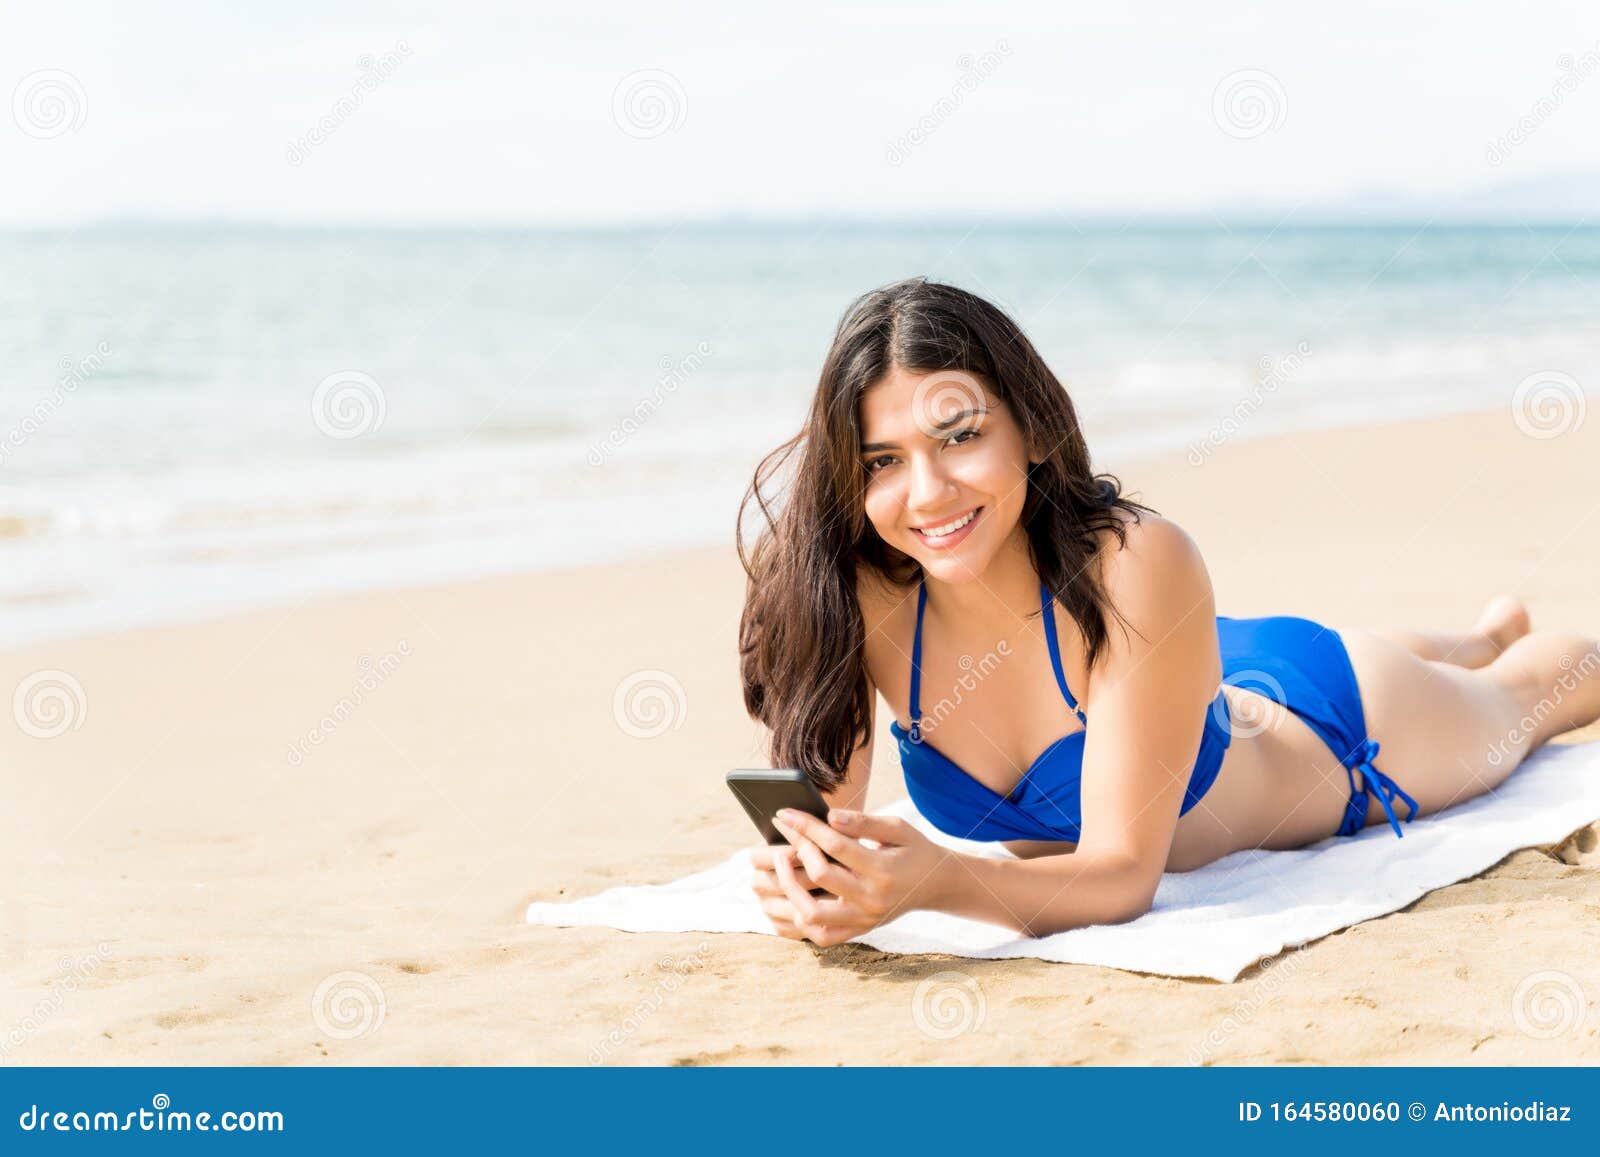 De Mujeres En Ropa De Usando Teléfono Celular En La Foto de - Imagen de retrato, sonriente: 164580060